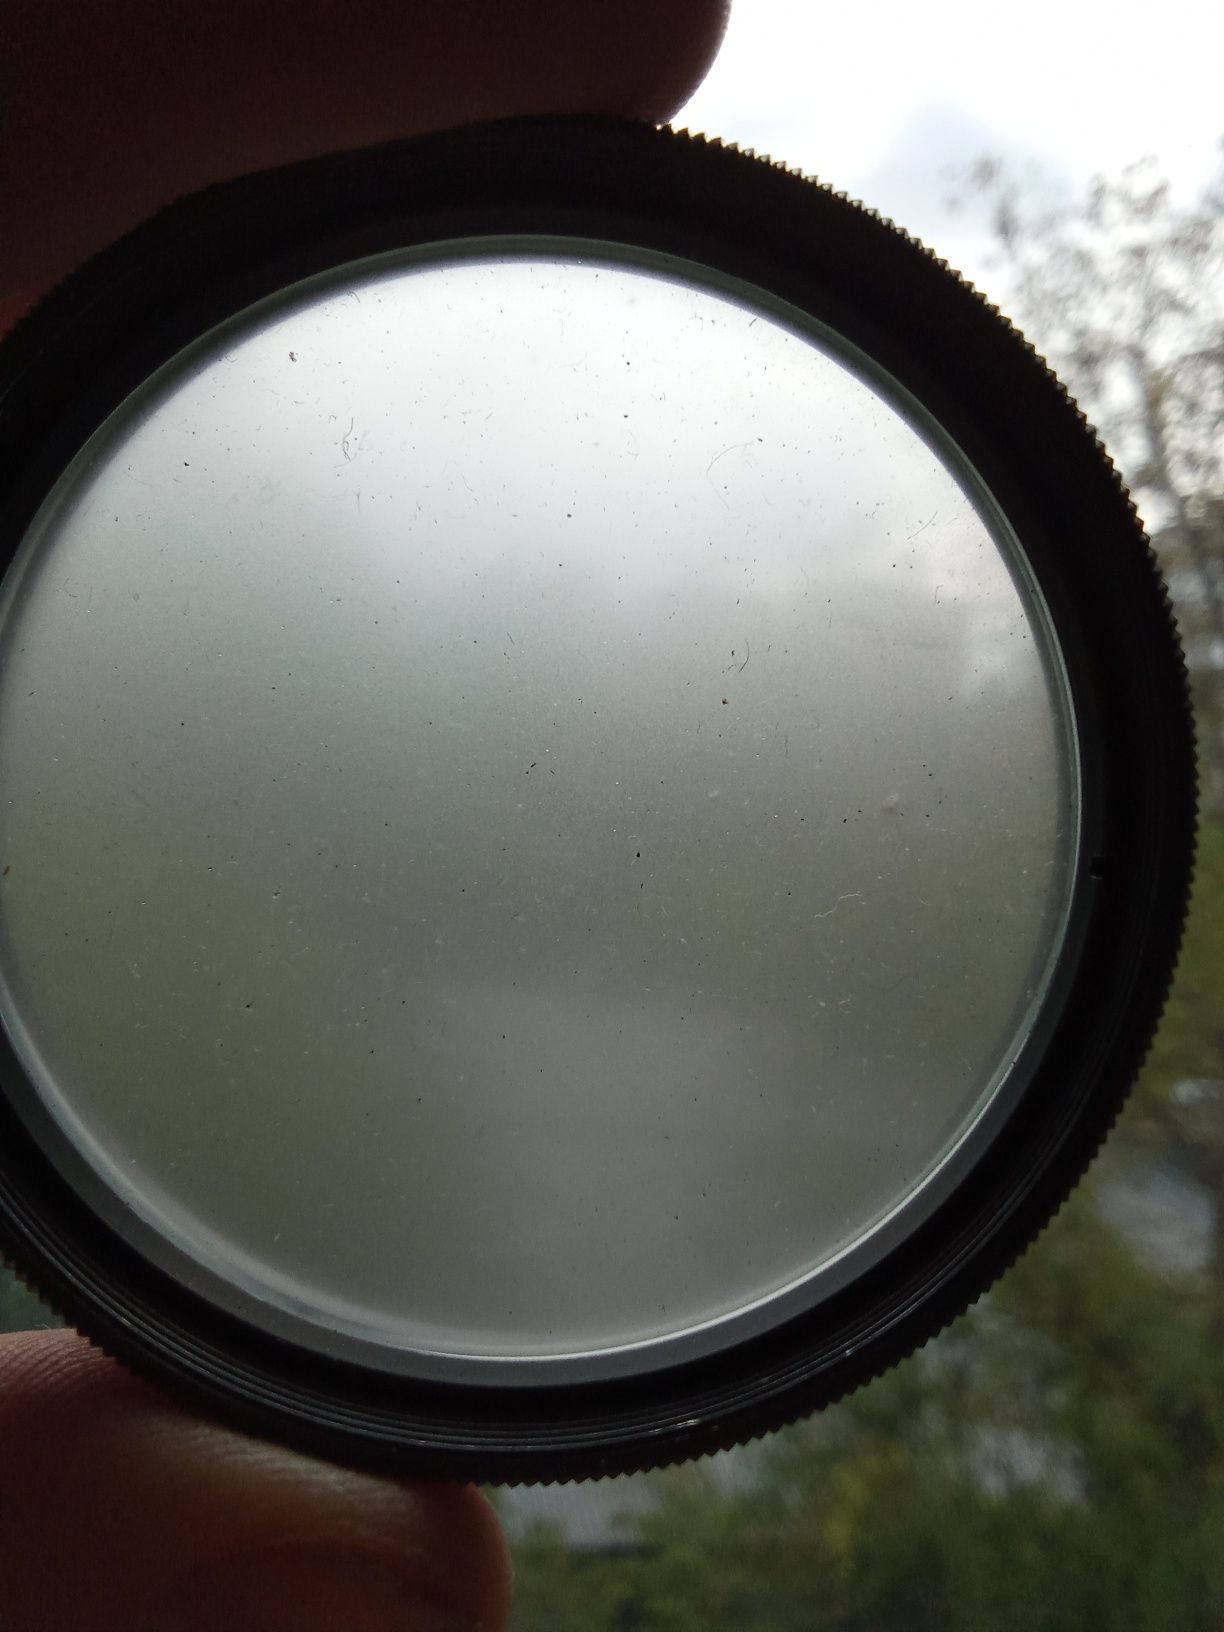 filtr światła do obiektywu. mgła 62×075 radziecki